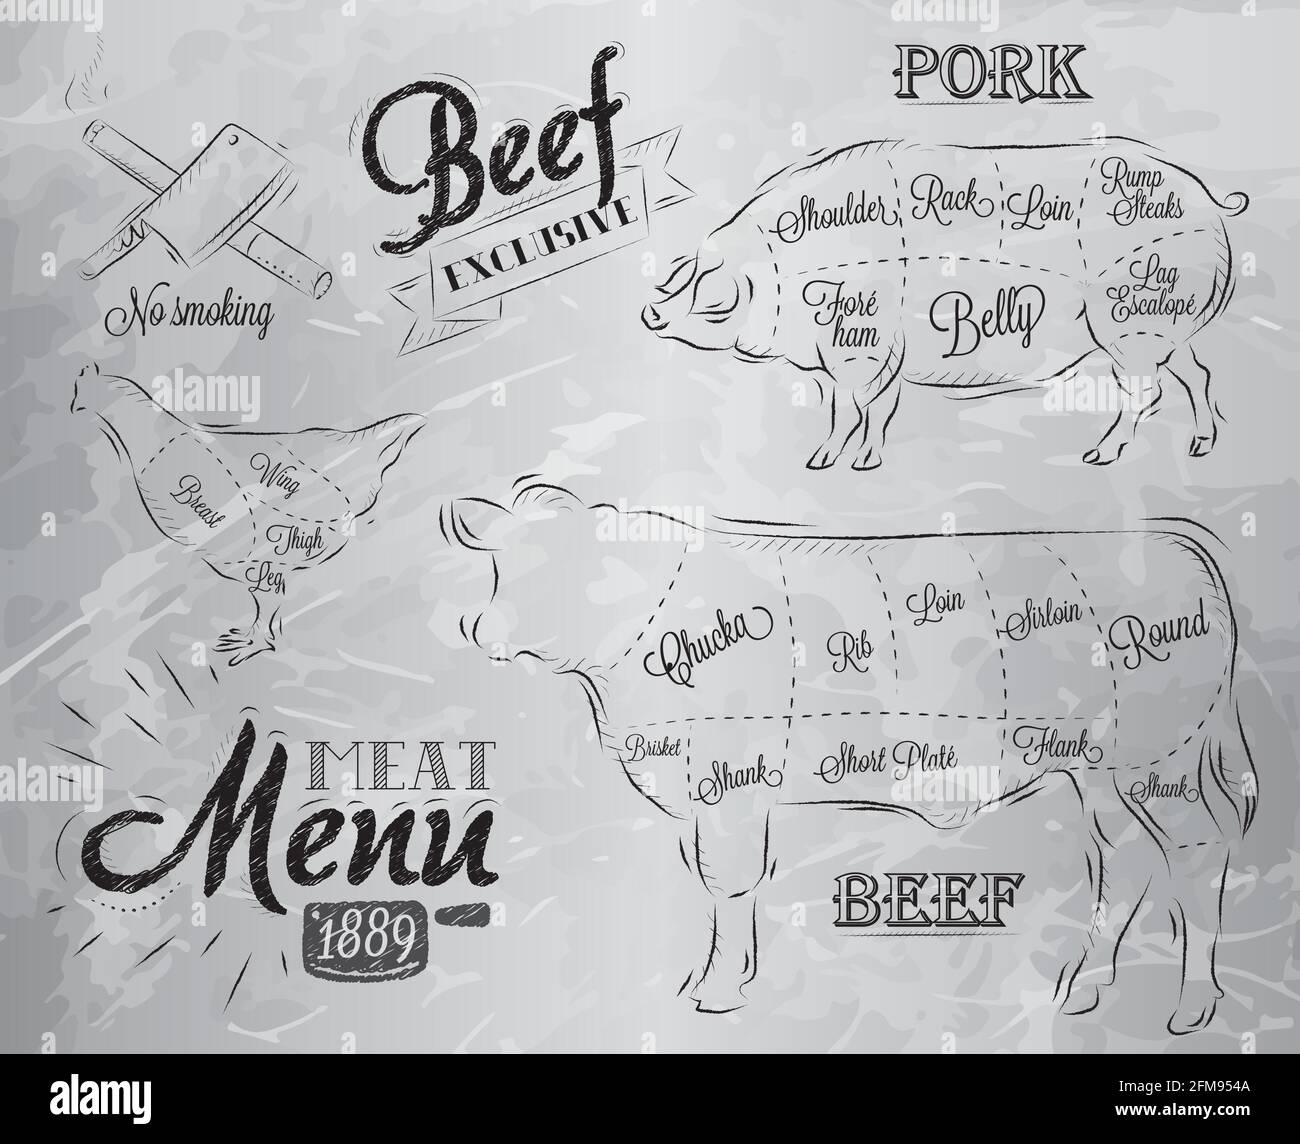 Ilustración de un elemento gráfico vintage en el menú de carne carne carne carne carne vaca cerdo pollo dividido en trozos de carne Ilustración del Vector